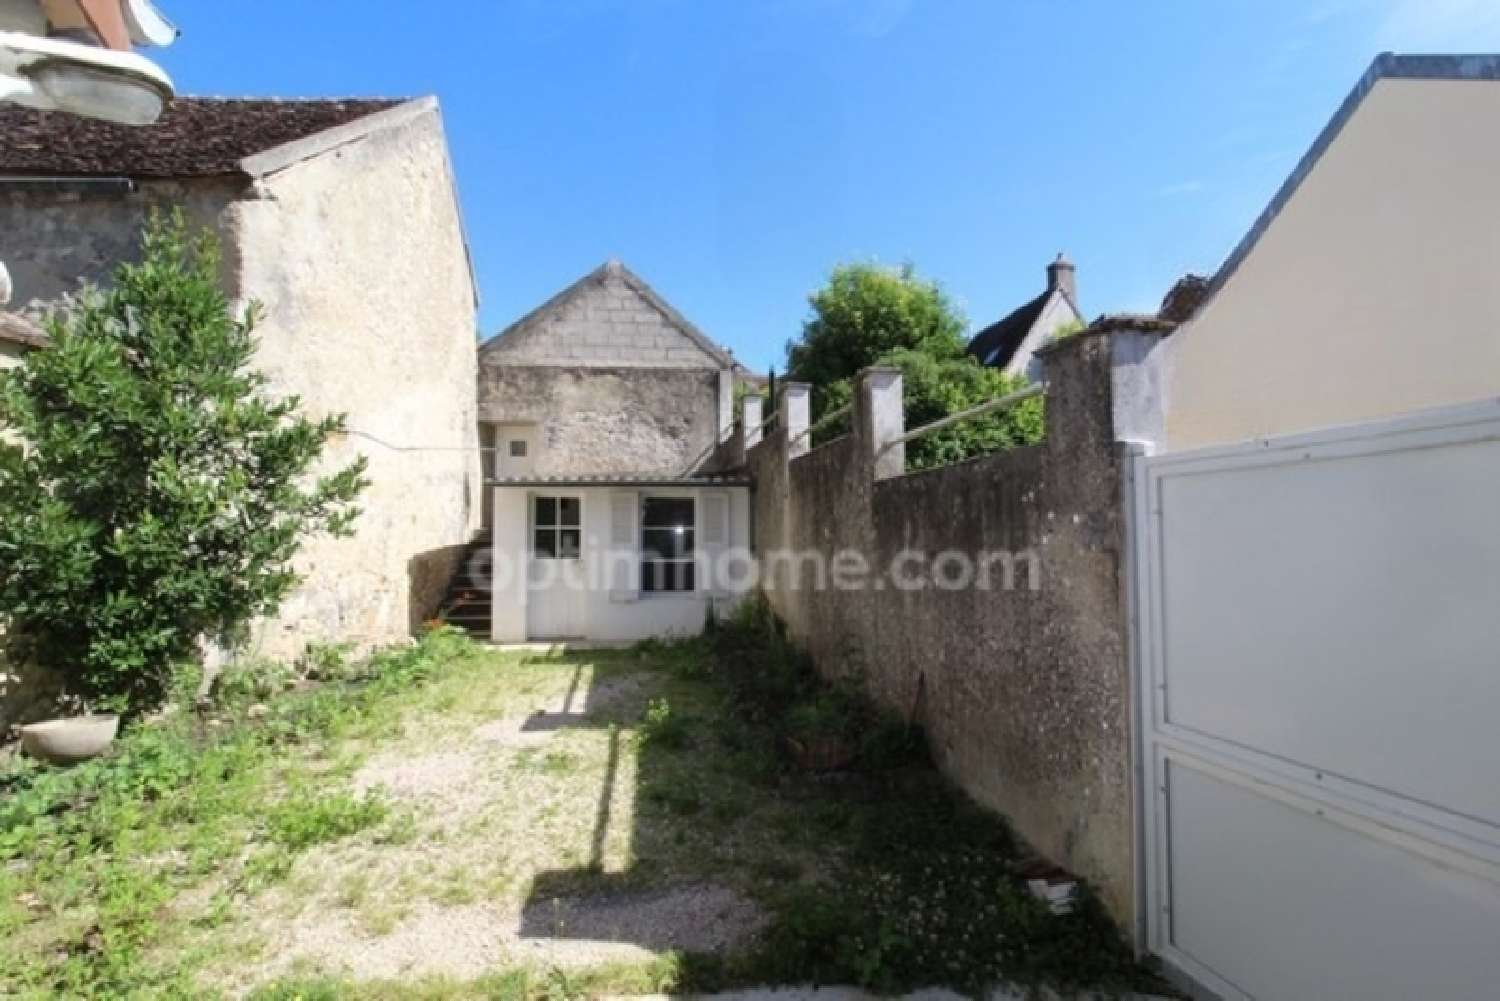  à vendre maison Paroy Seine-et-Marne 3